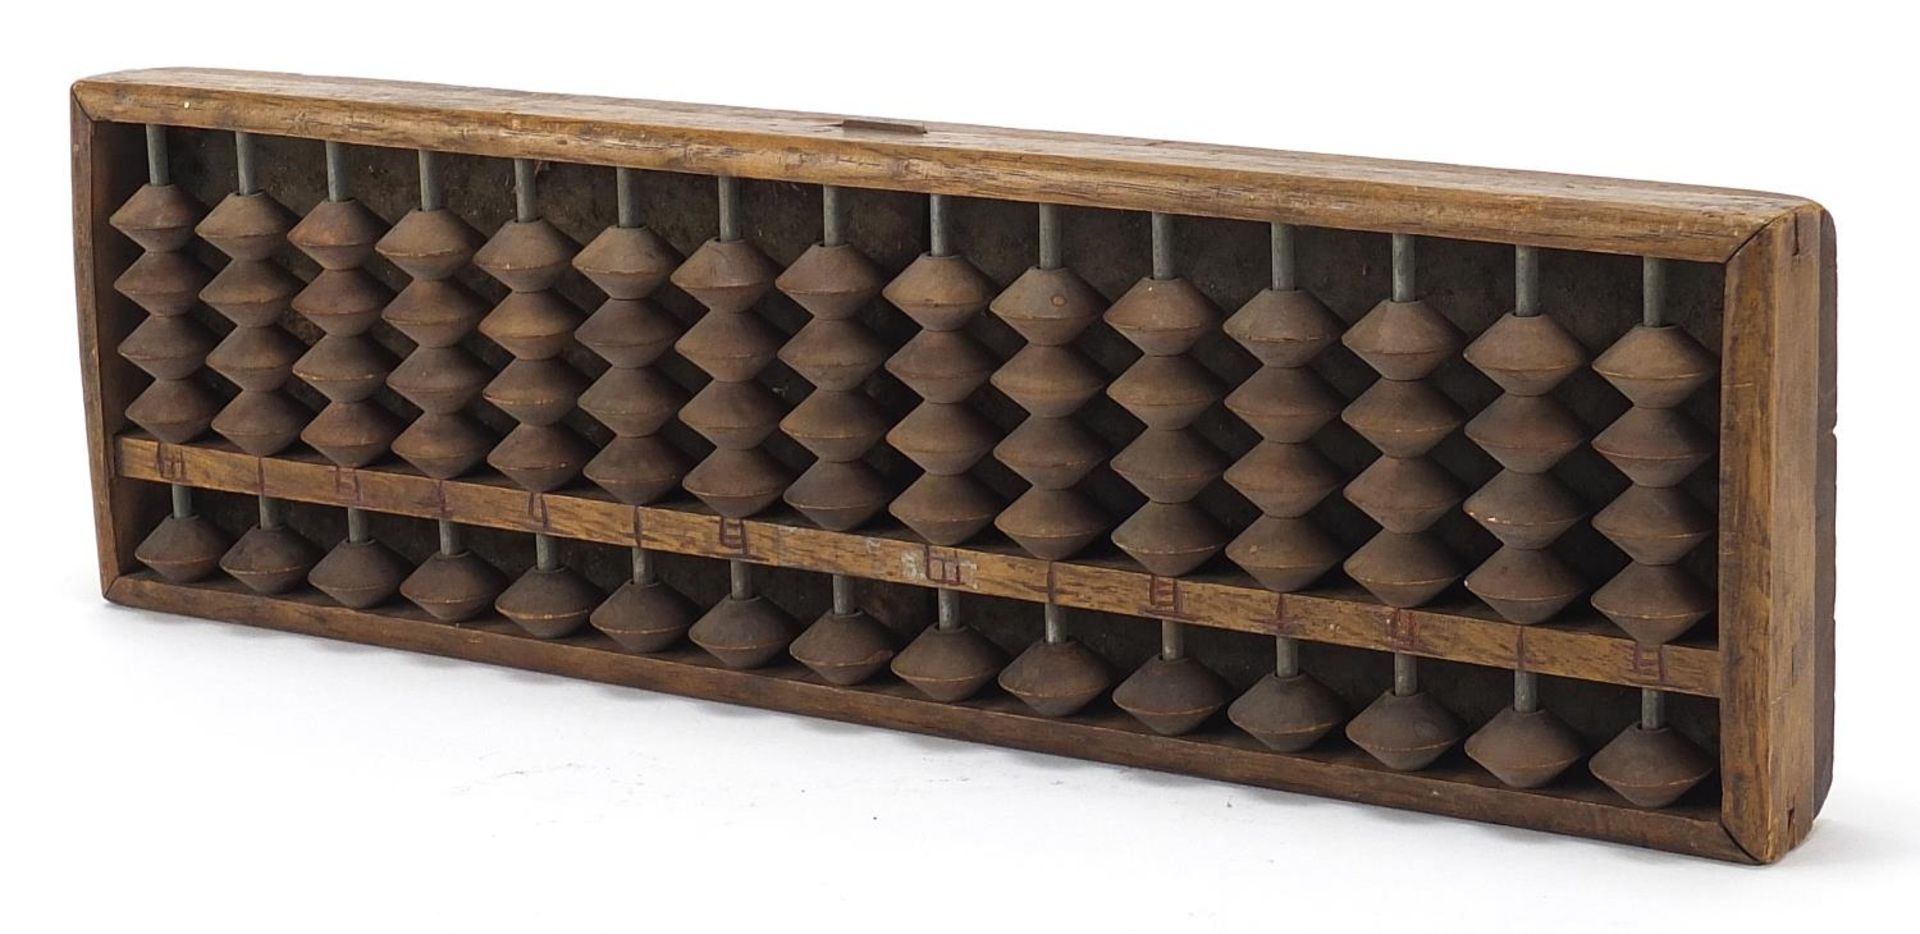 Chinese hardwood abacus, 33cm x 10cm